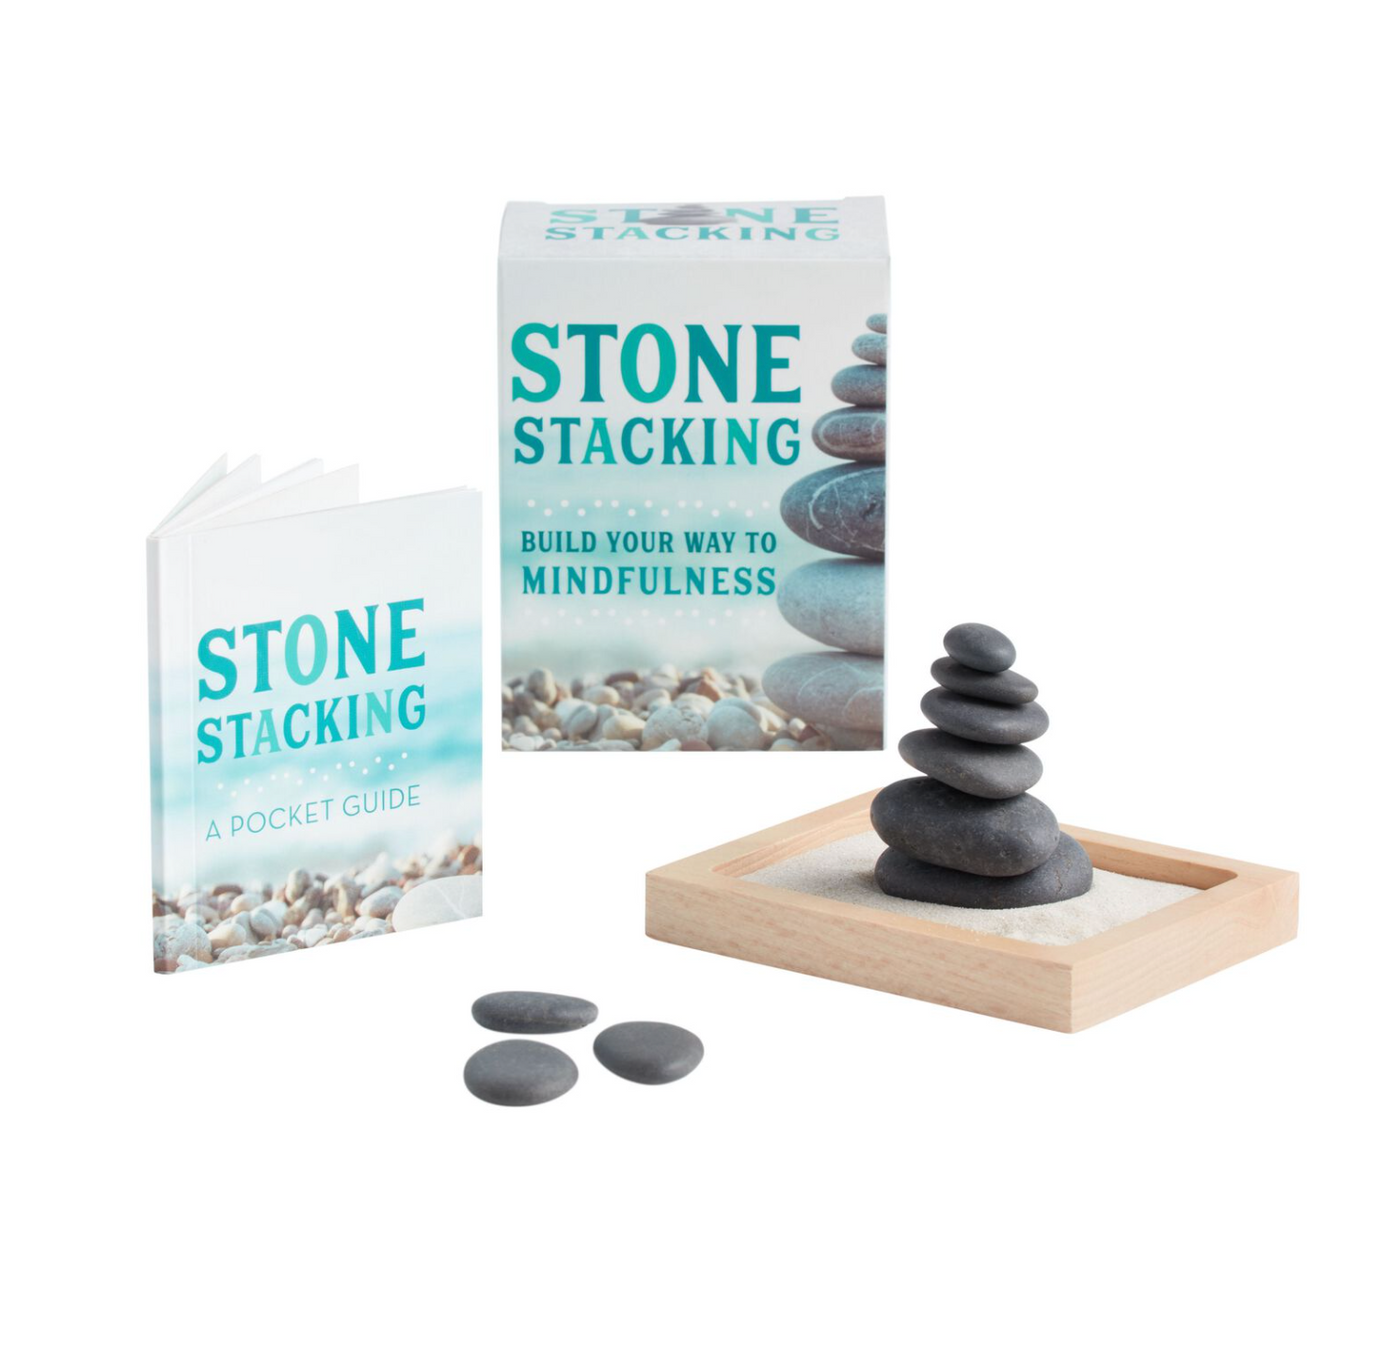 Stone Stacking Kit